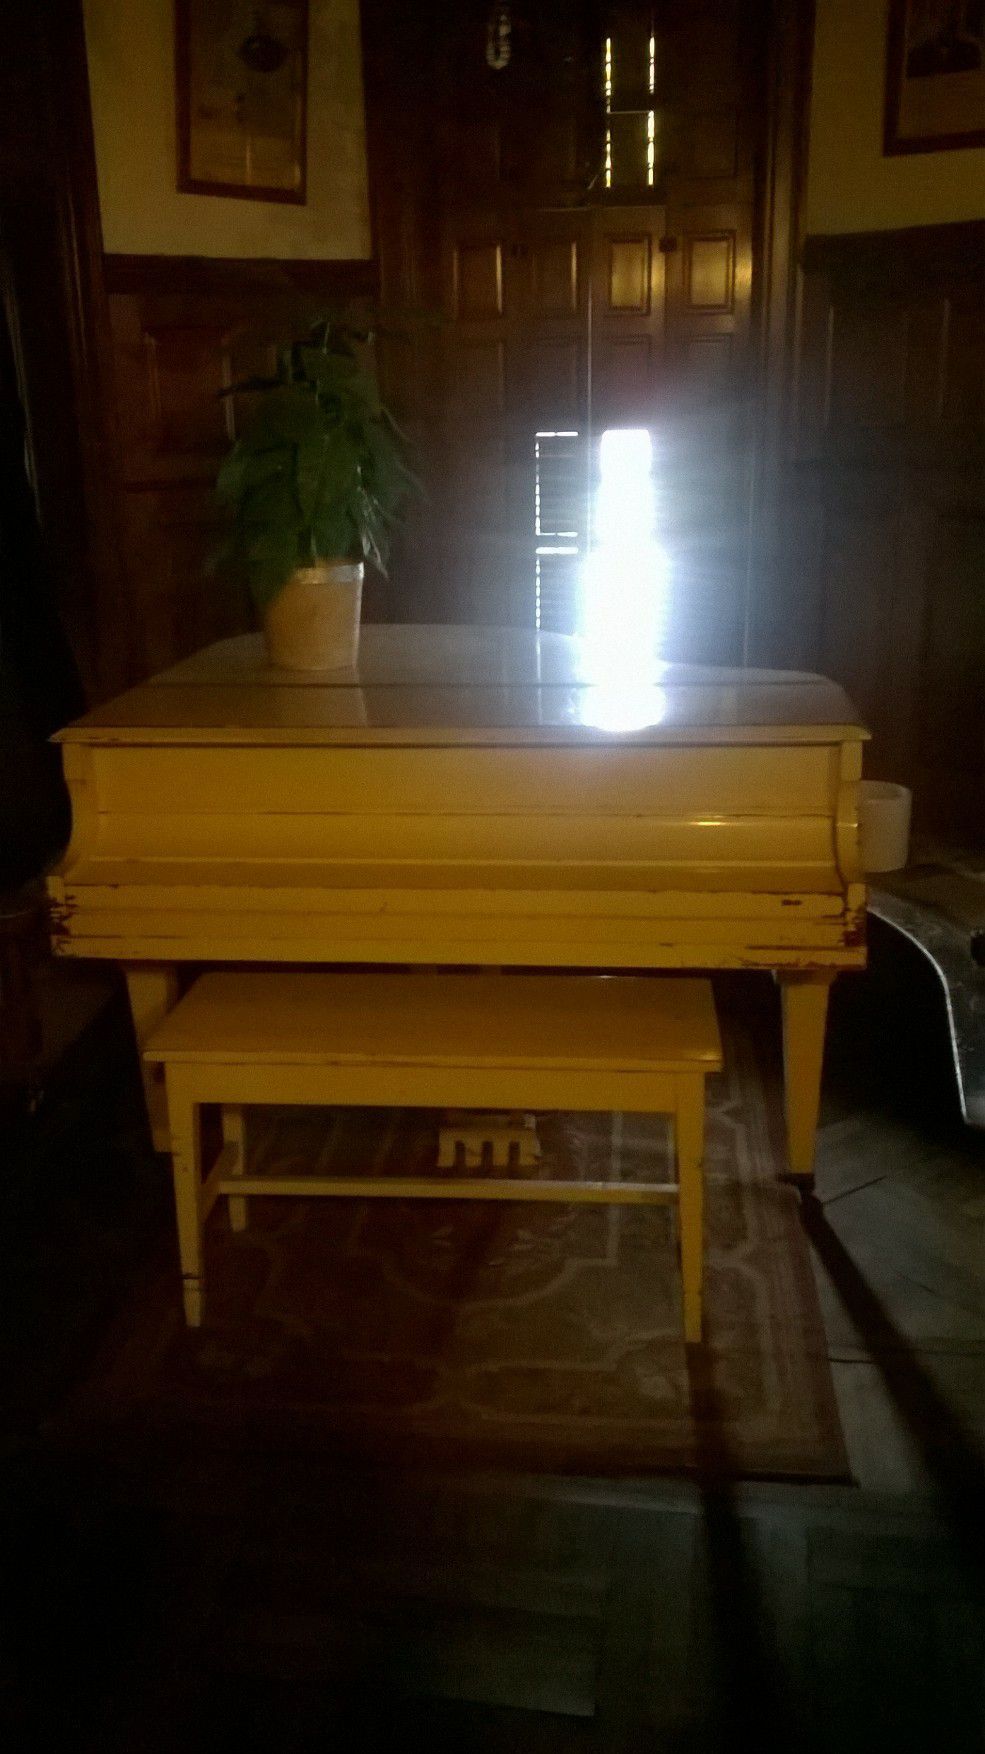 Lester piano